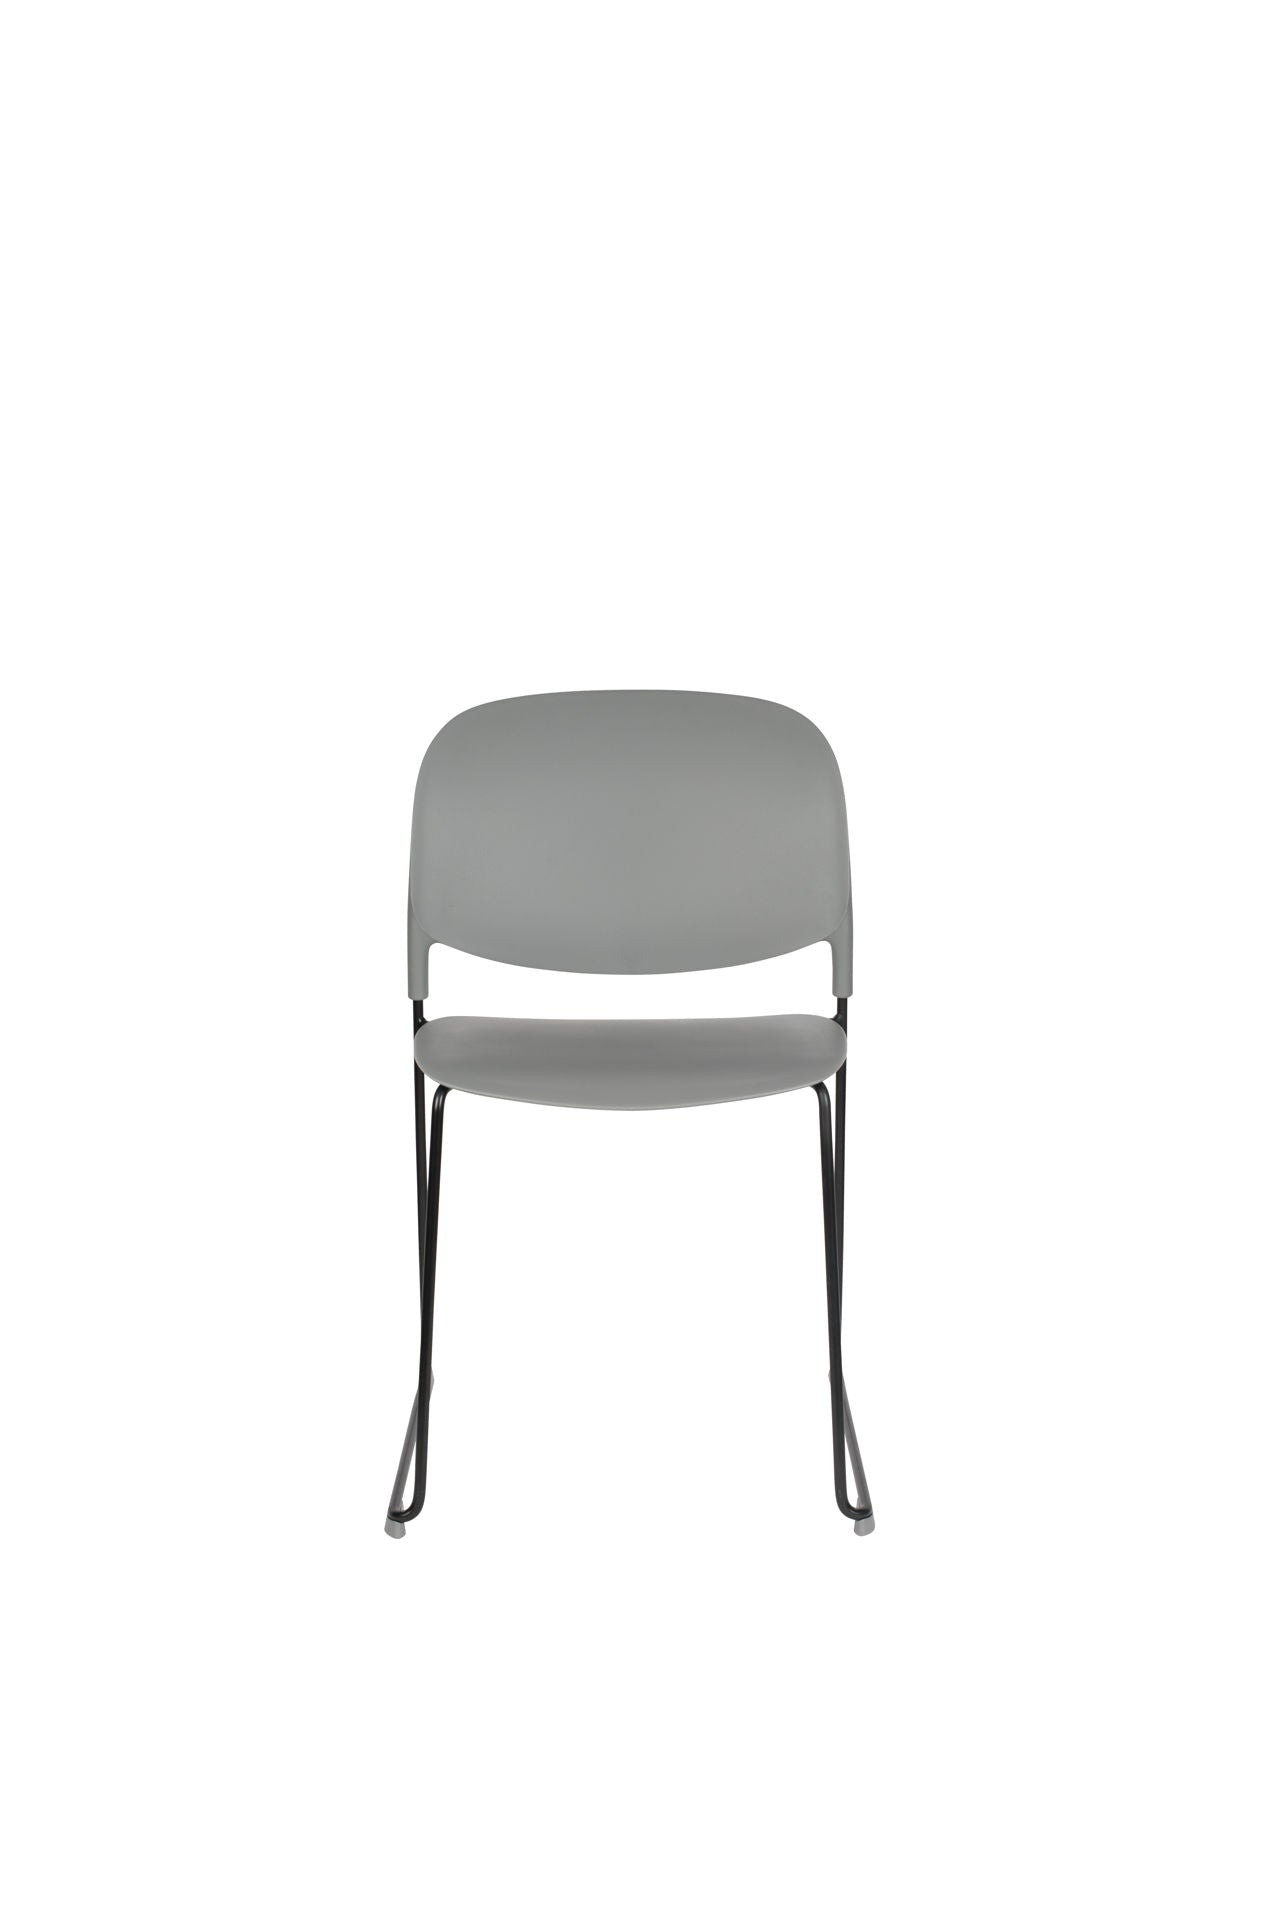 Nancy's Prairie du Sac Chair - Rétro - Gris, Noir - Polypropylène, Acier, Plastique - 52,5 cm x 48,5 cm x 80 cm